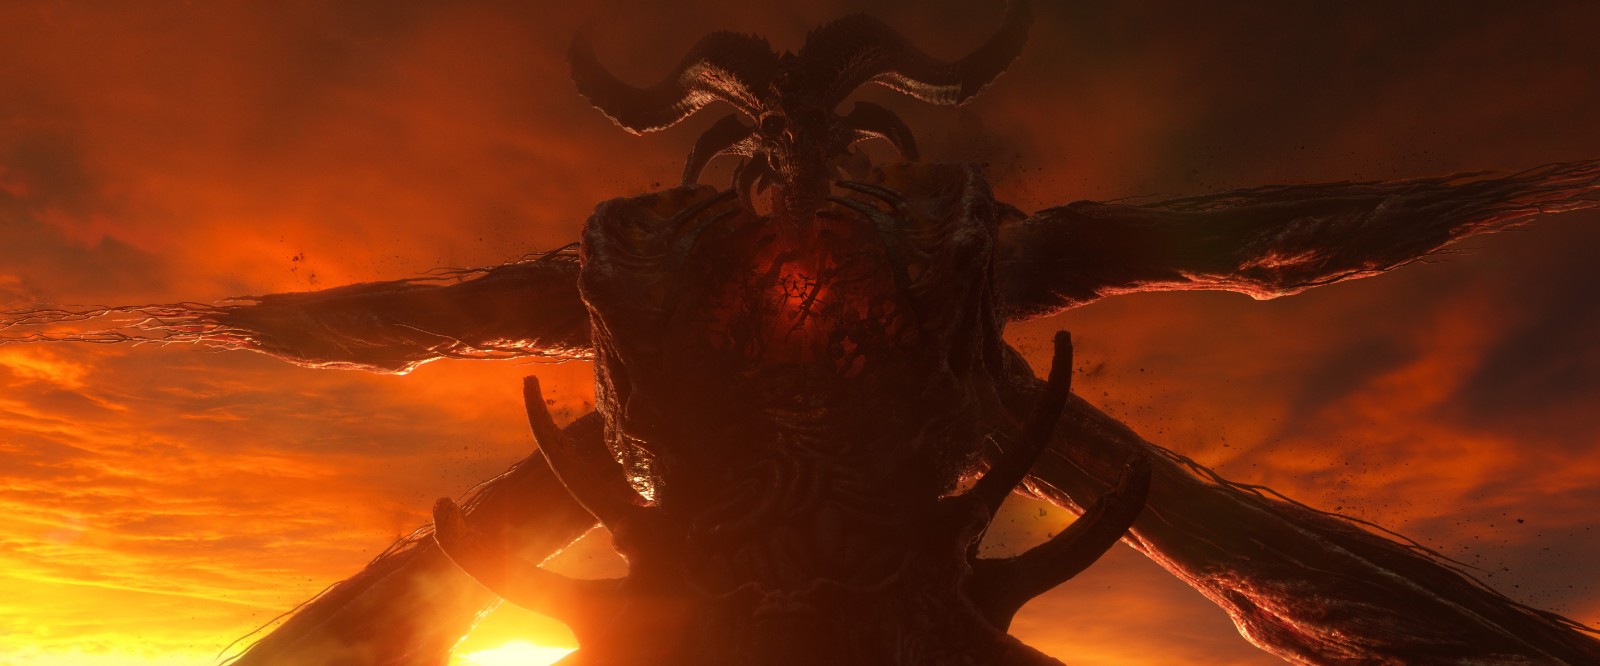 《暗黑破坏神4》DLC憎恨之躯全新预告 10月8日上线